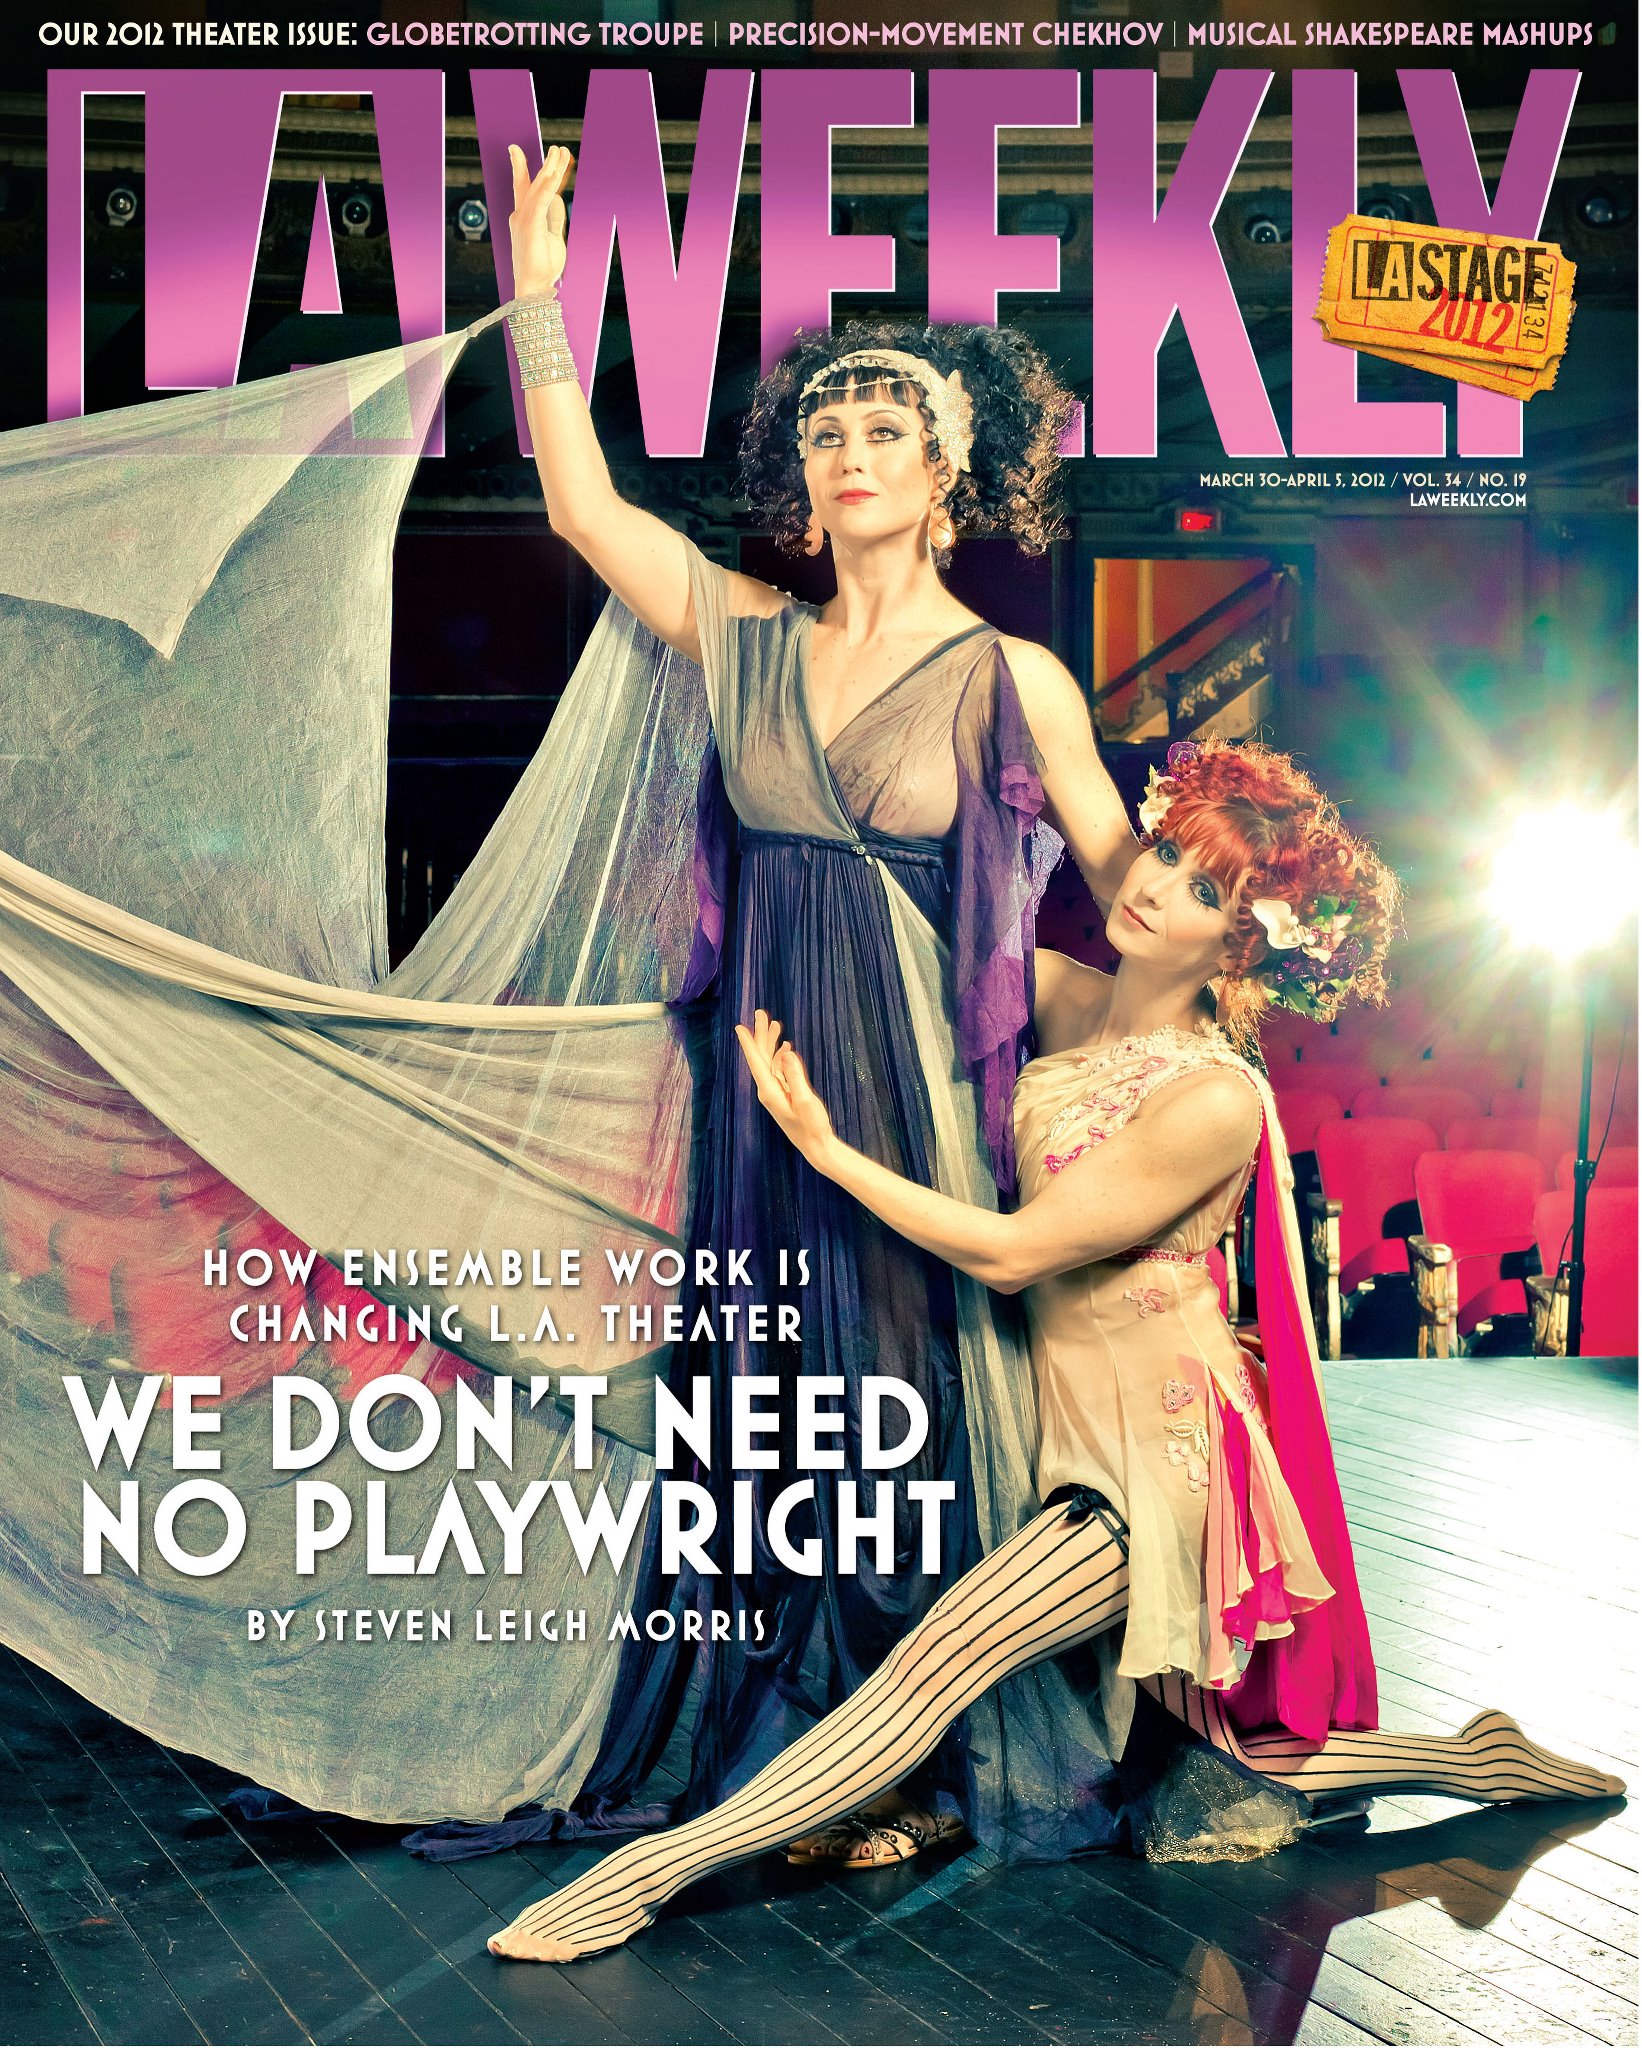 LA Weekly cover with Molly Morgan and Bonnie Morgan.